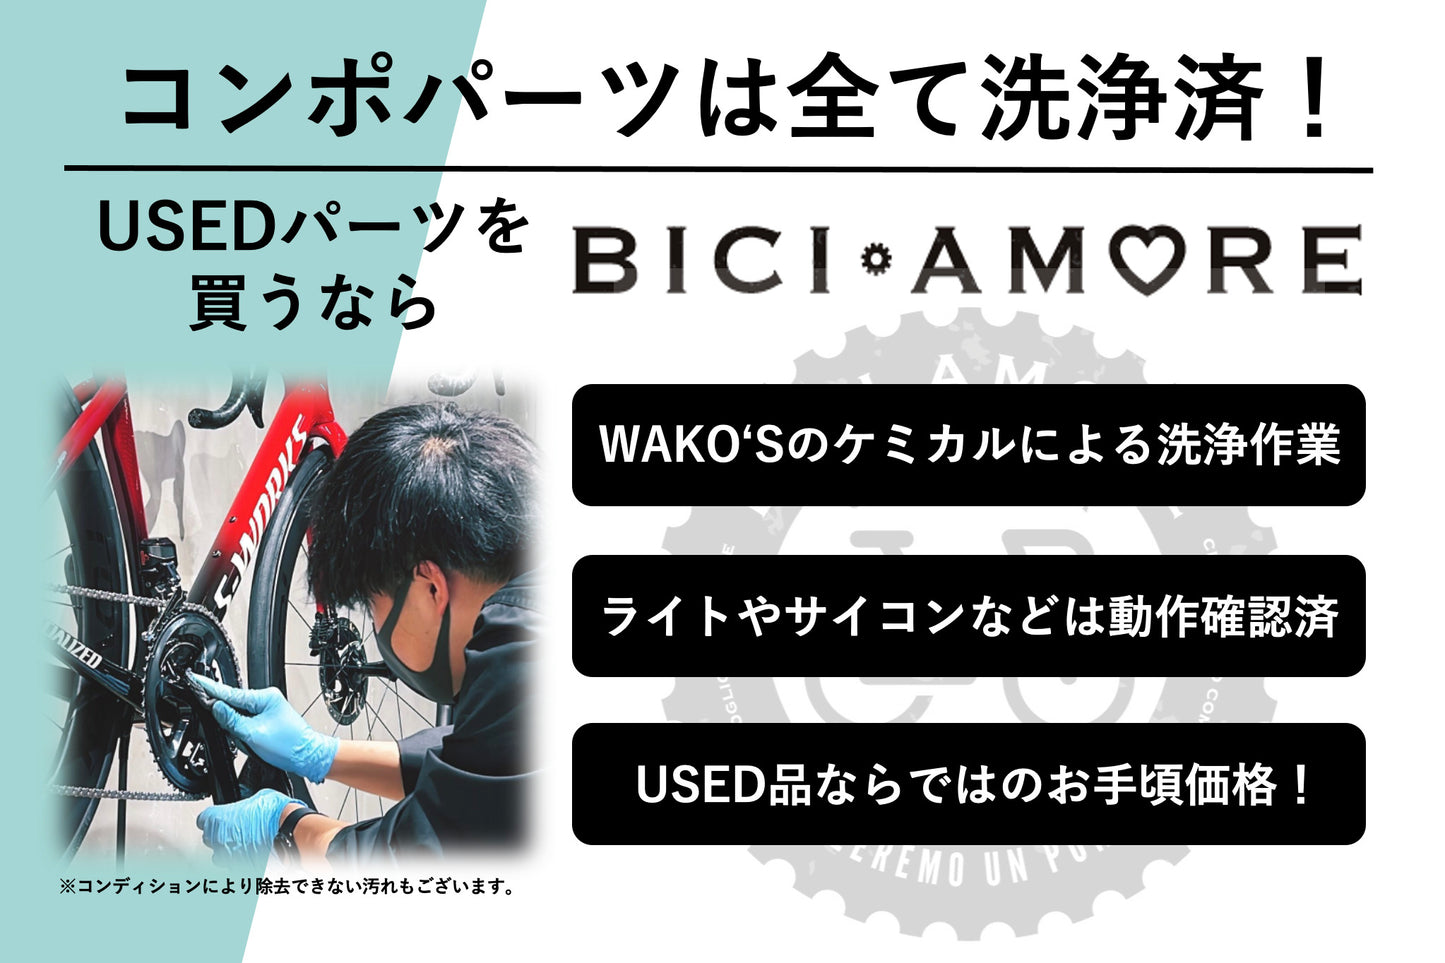 HM341 シマノ SHIMANO 105 FC-R7000 クランクセット 170mm 53/39T 黒